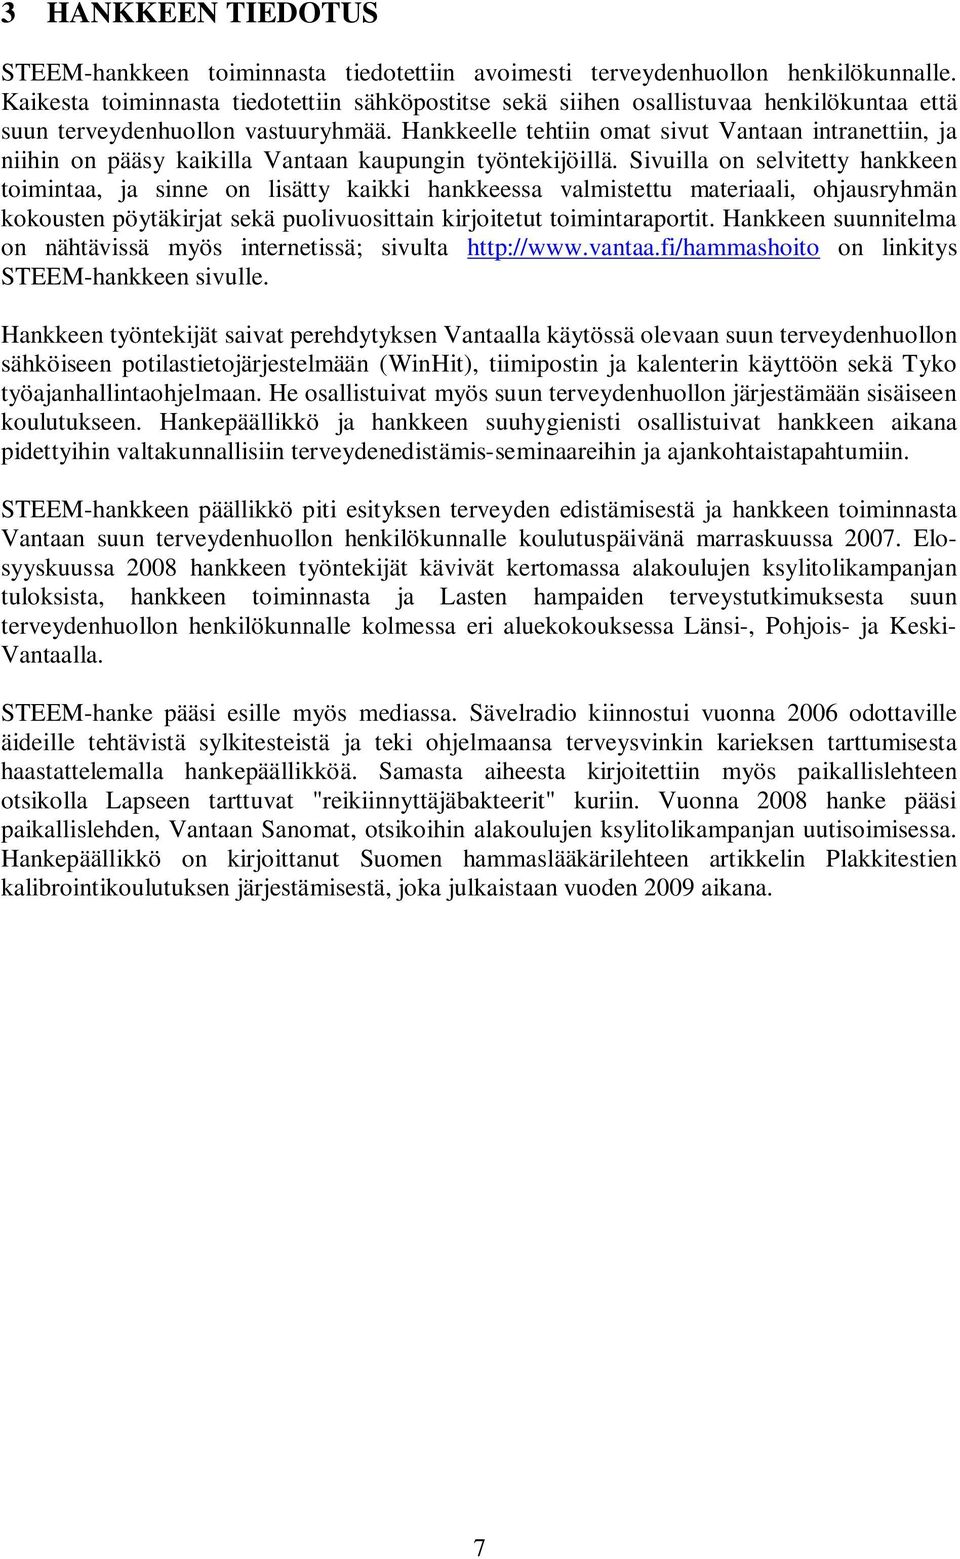 Hankkeelle tehtiin omat sivut Vantaan intranettiin, ja niihin on pääsy kaikilla Vantaan kaupungin työntekijöillä.